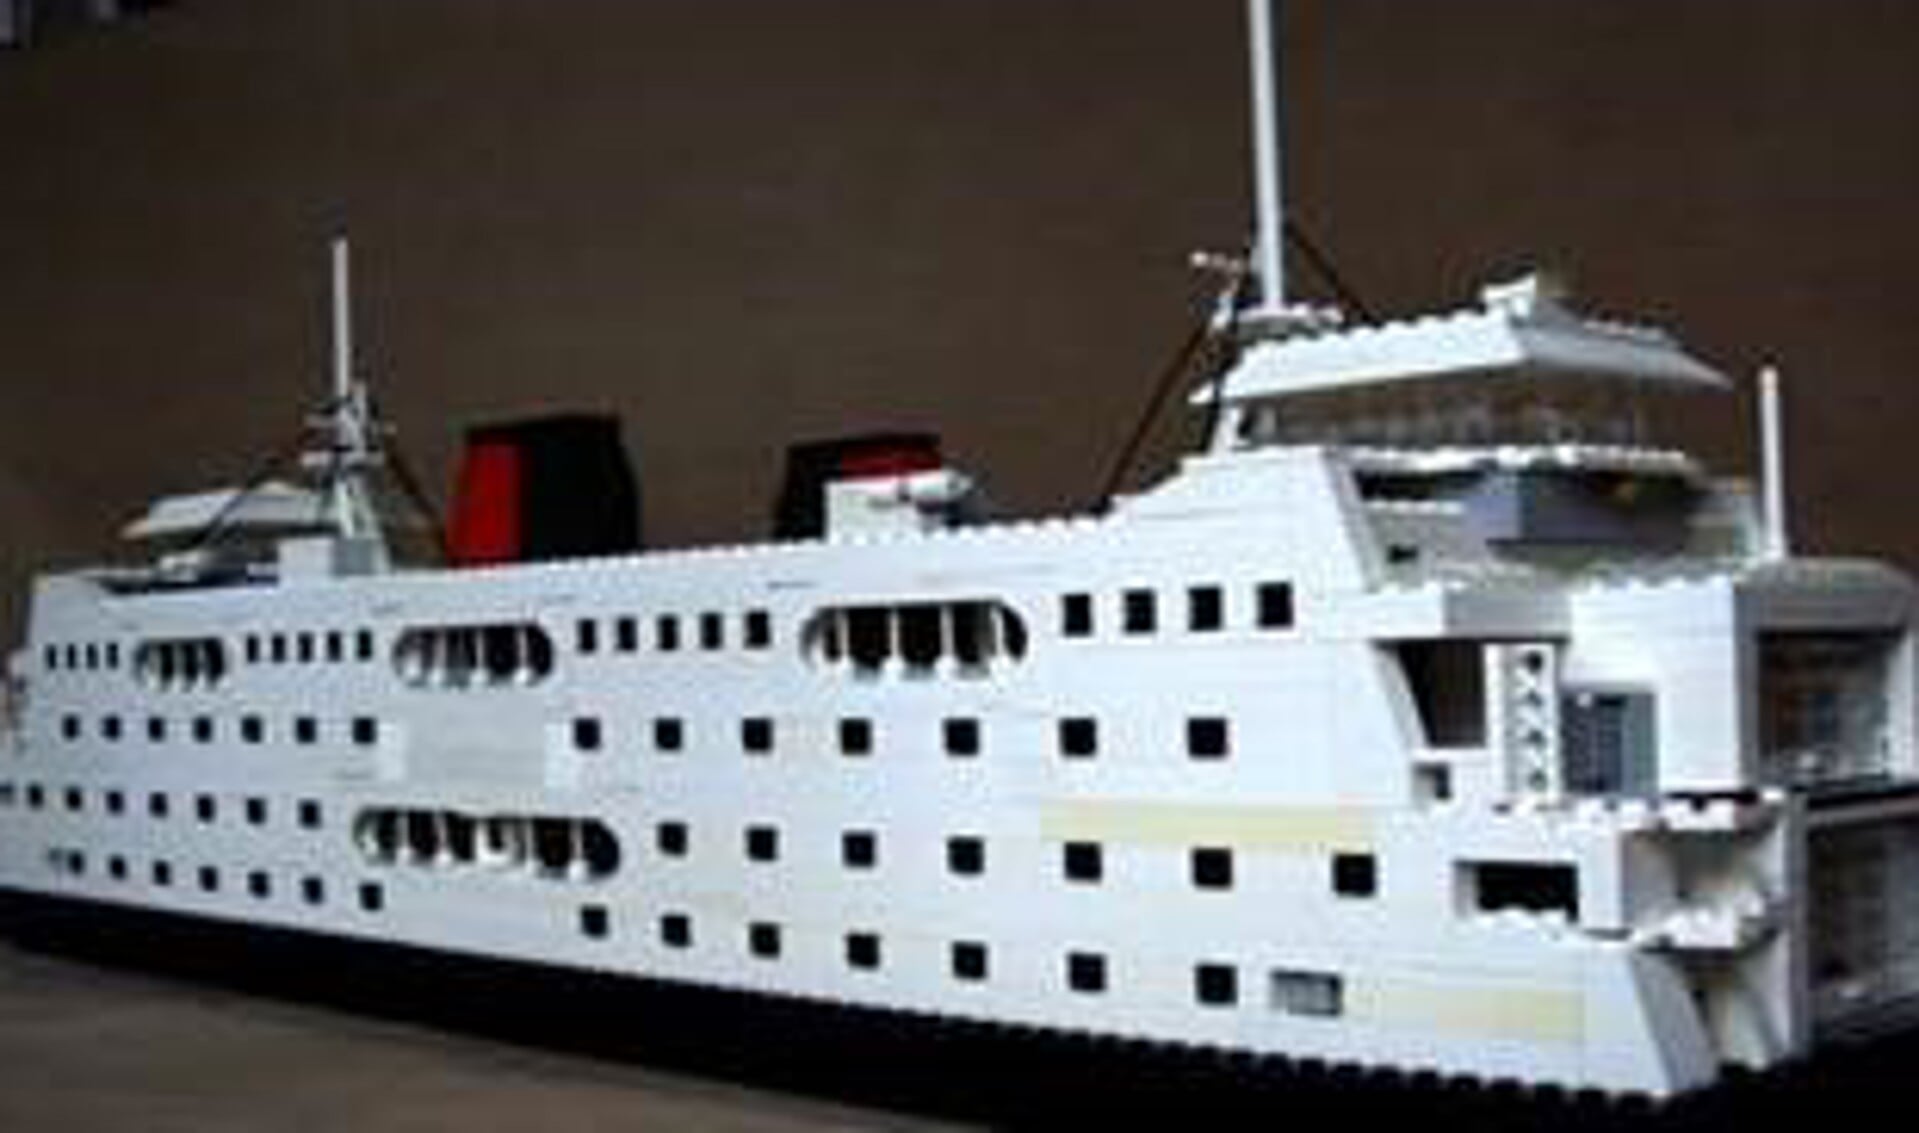 De Lego-replica van veerboot Schulpengat die maandag 21 december in de TESO-tentoonsteling wordt geplaatst.